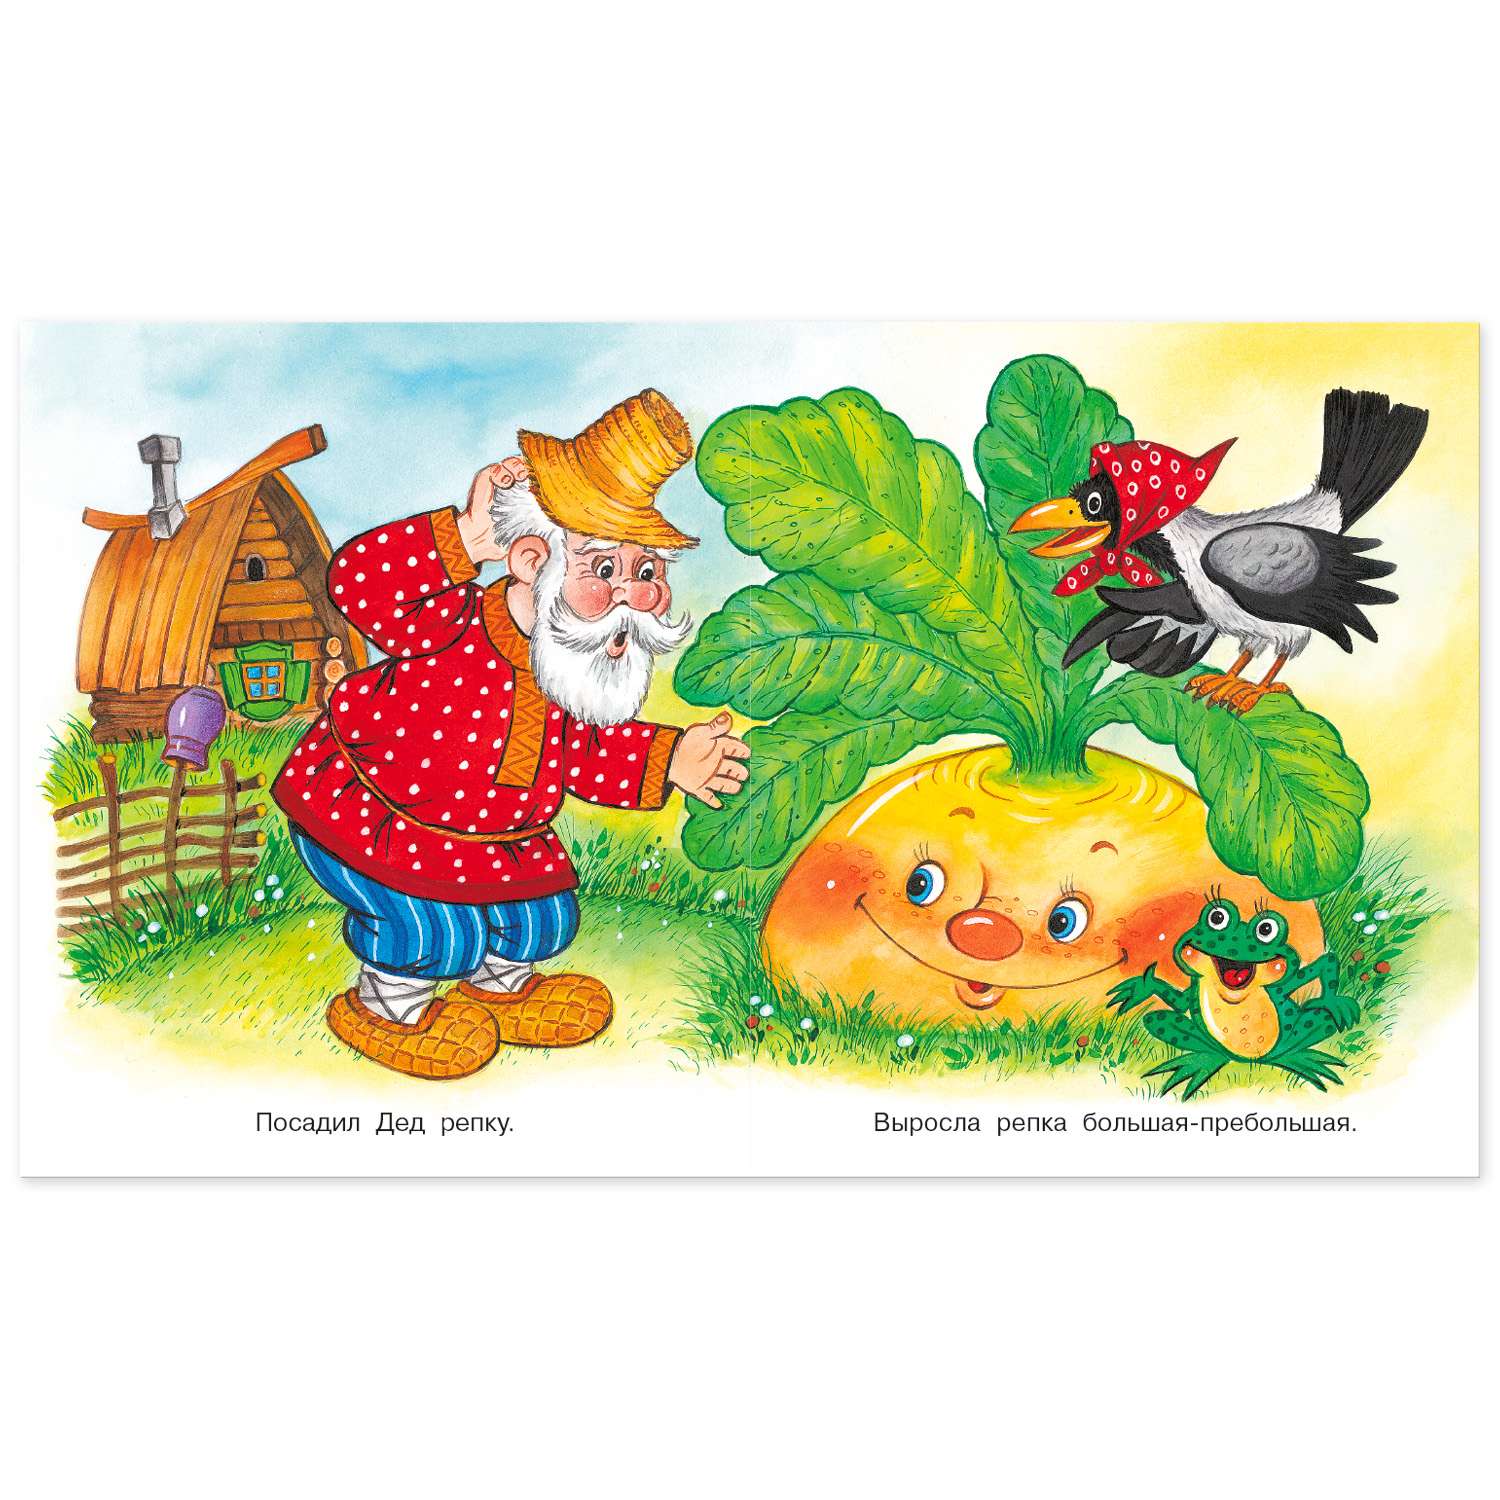 Комплект книг Фламинго Книги для малышей Русские народные сказки для детей сборник №2 из 9 книг - фото 7